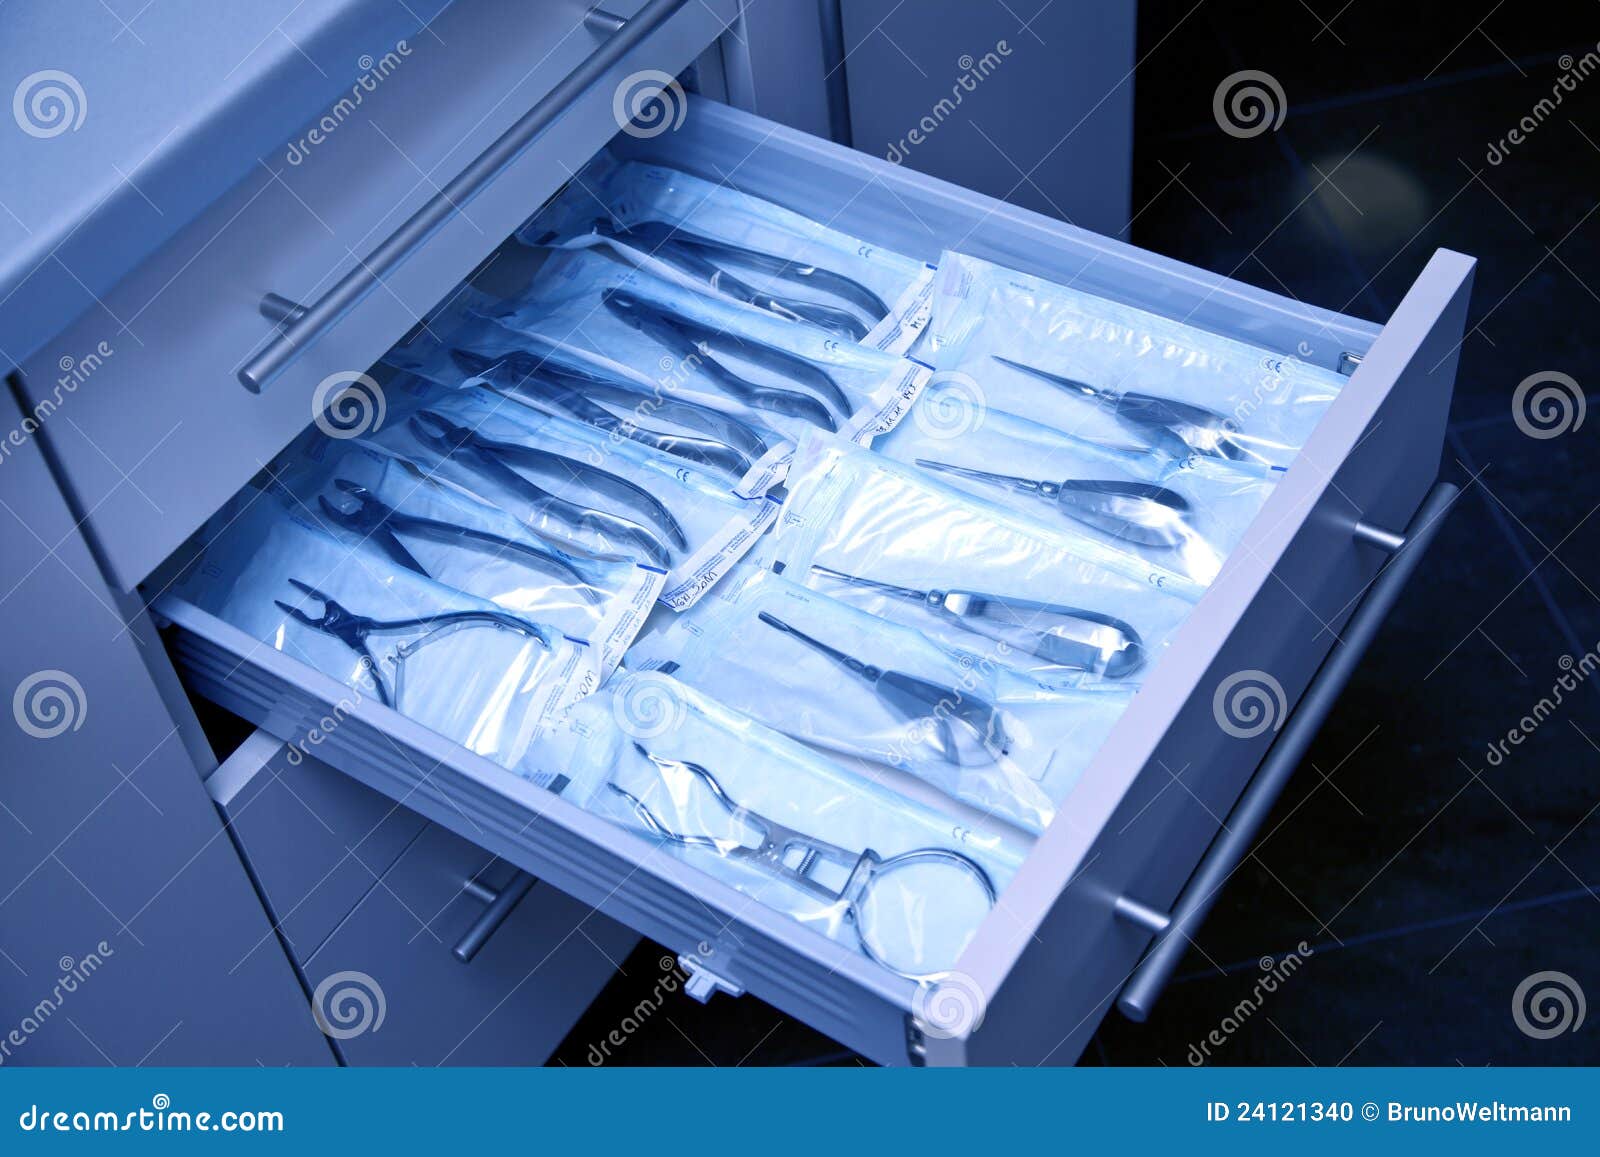 Как хранить стерильные. Шкаф для хранения стоматологических инструментов. Шкаф для хирургических инструментов. Хранение хирургических инструментов. Хирургический шкаф для хранения инструментов.